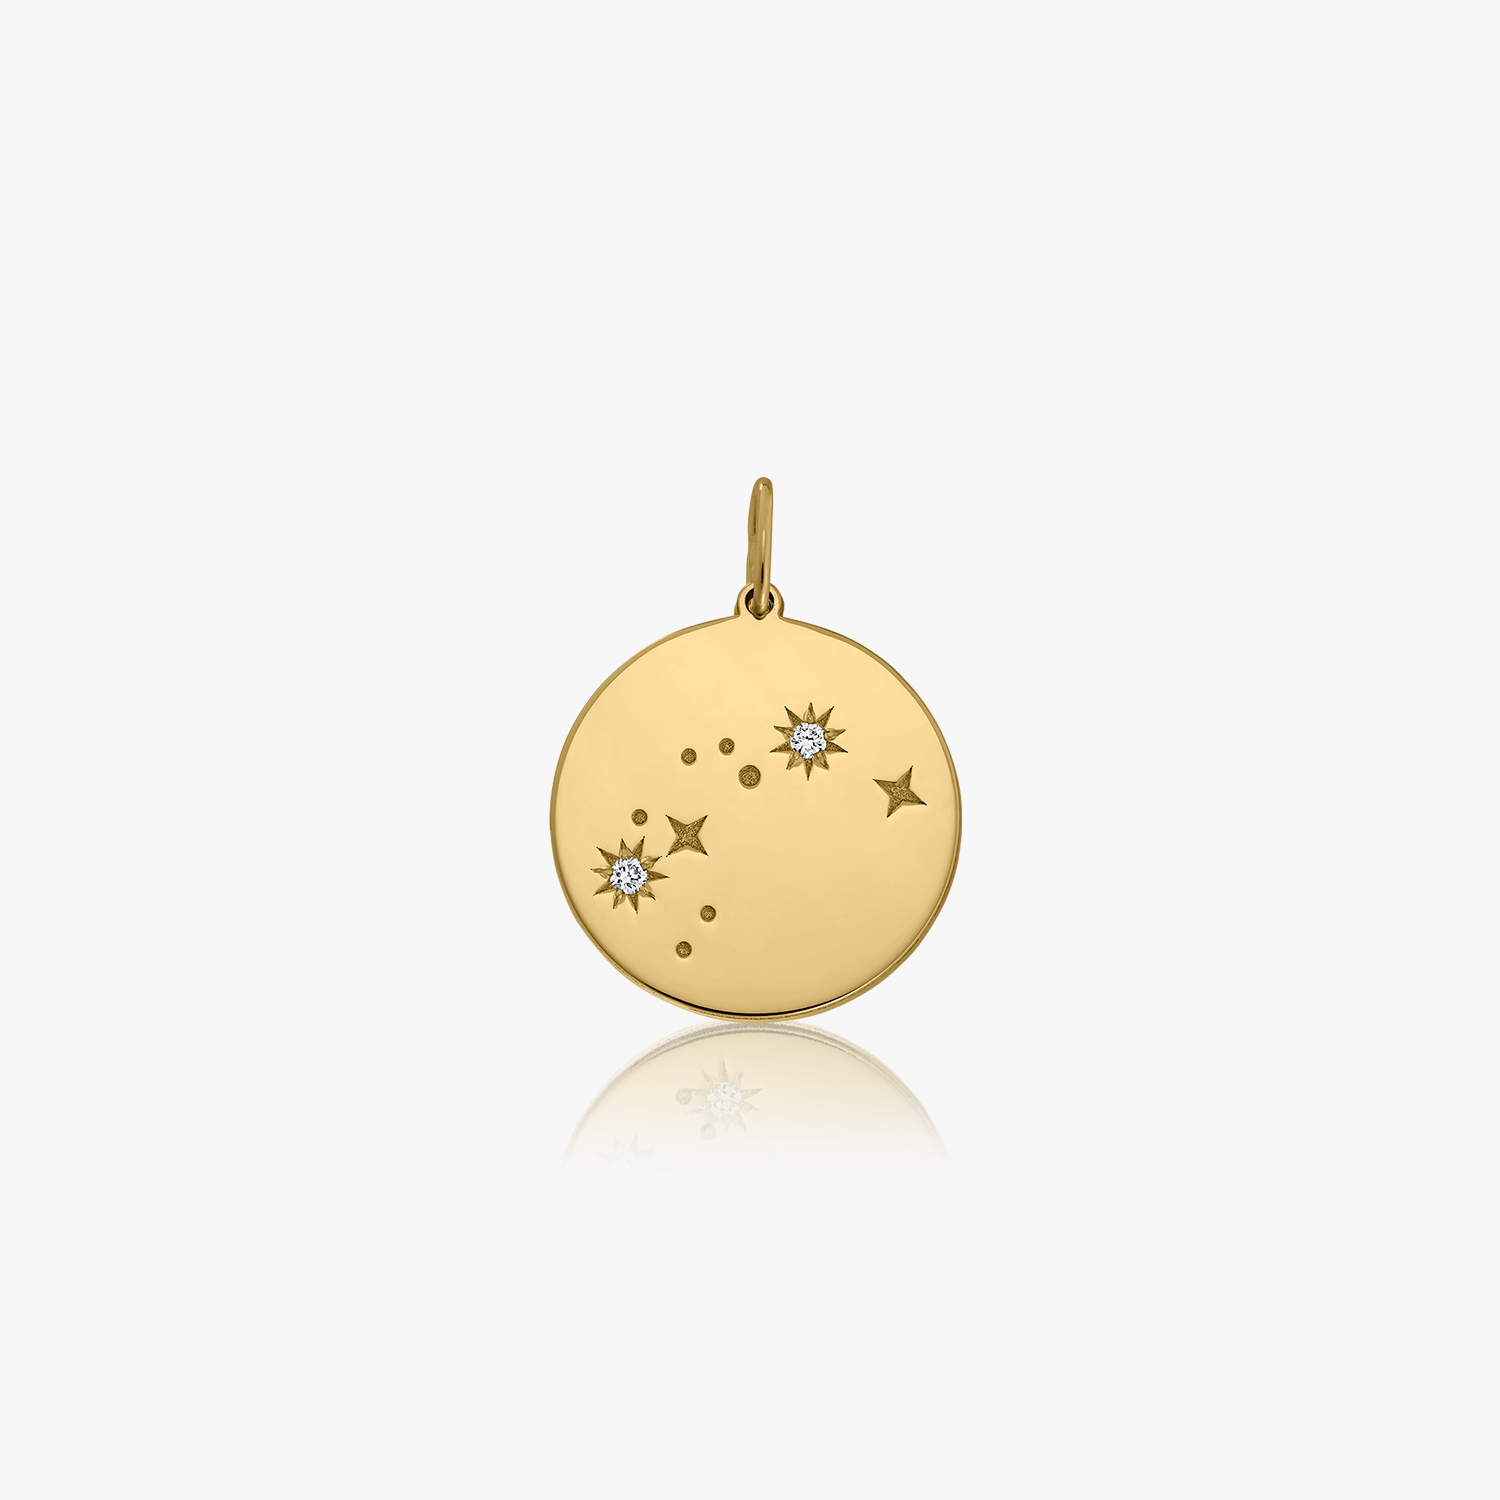 Zodiac - Aquarius gold pendant